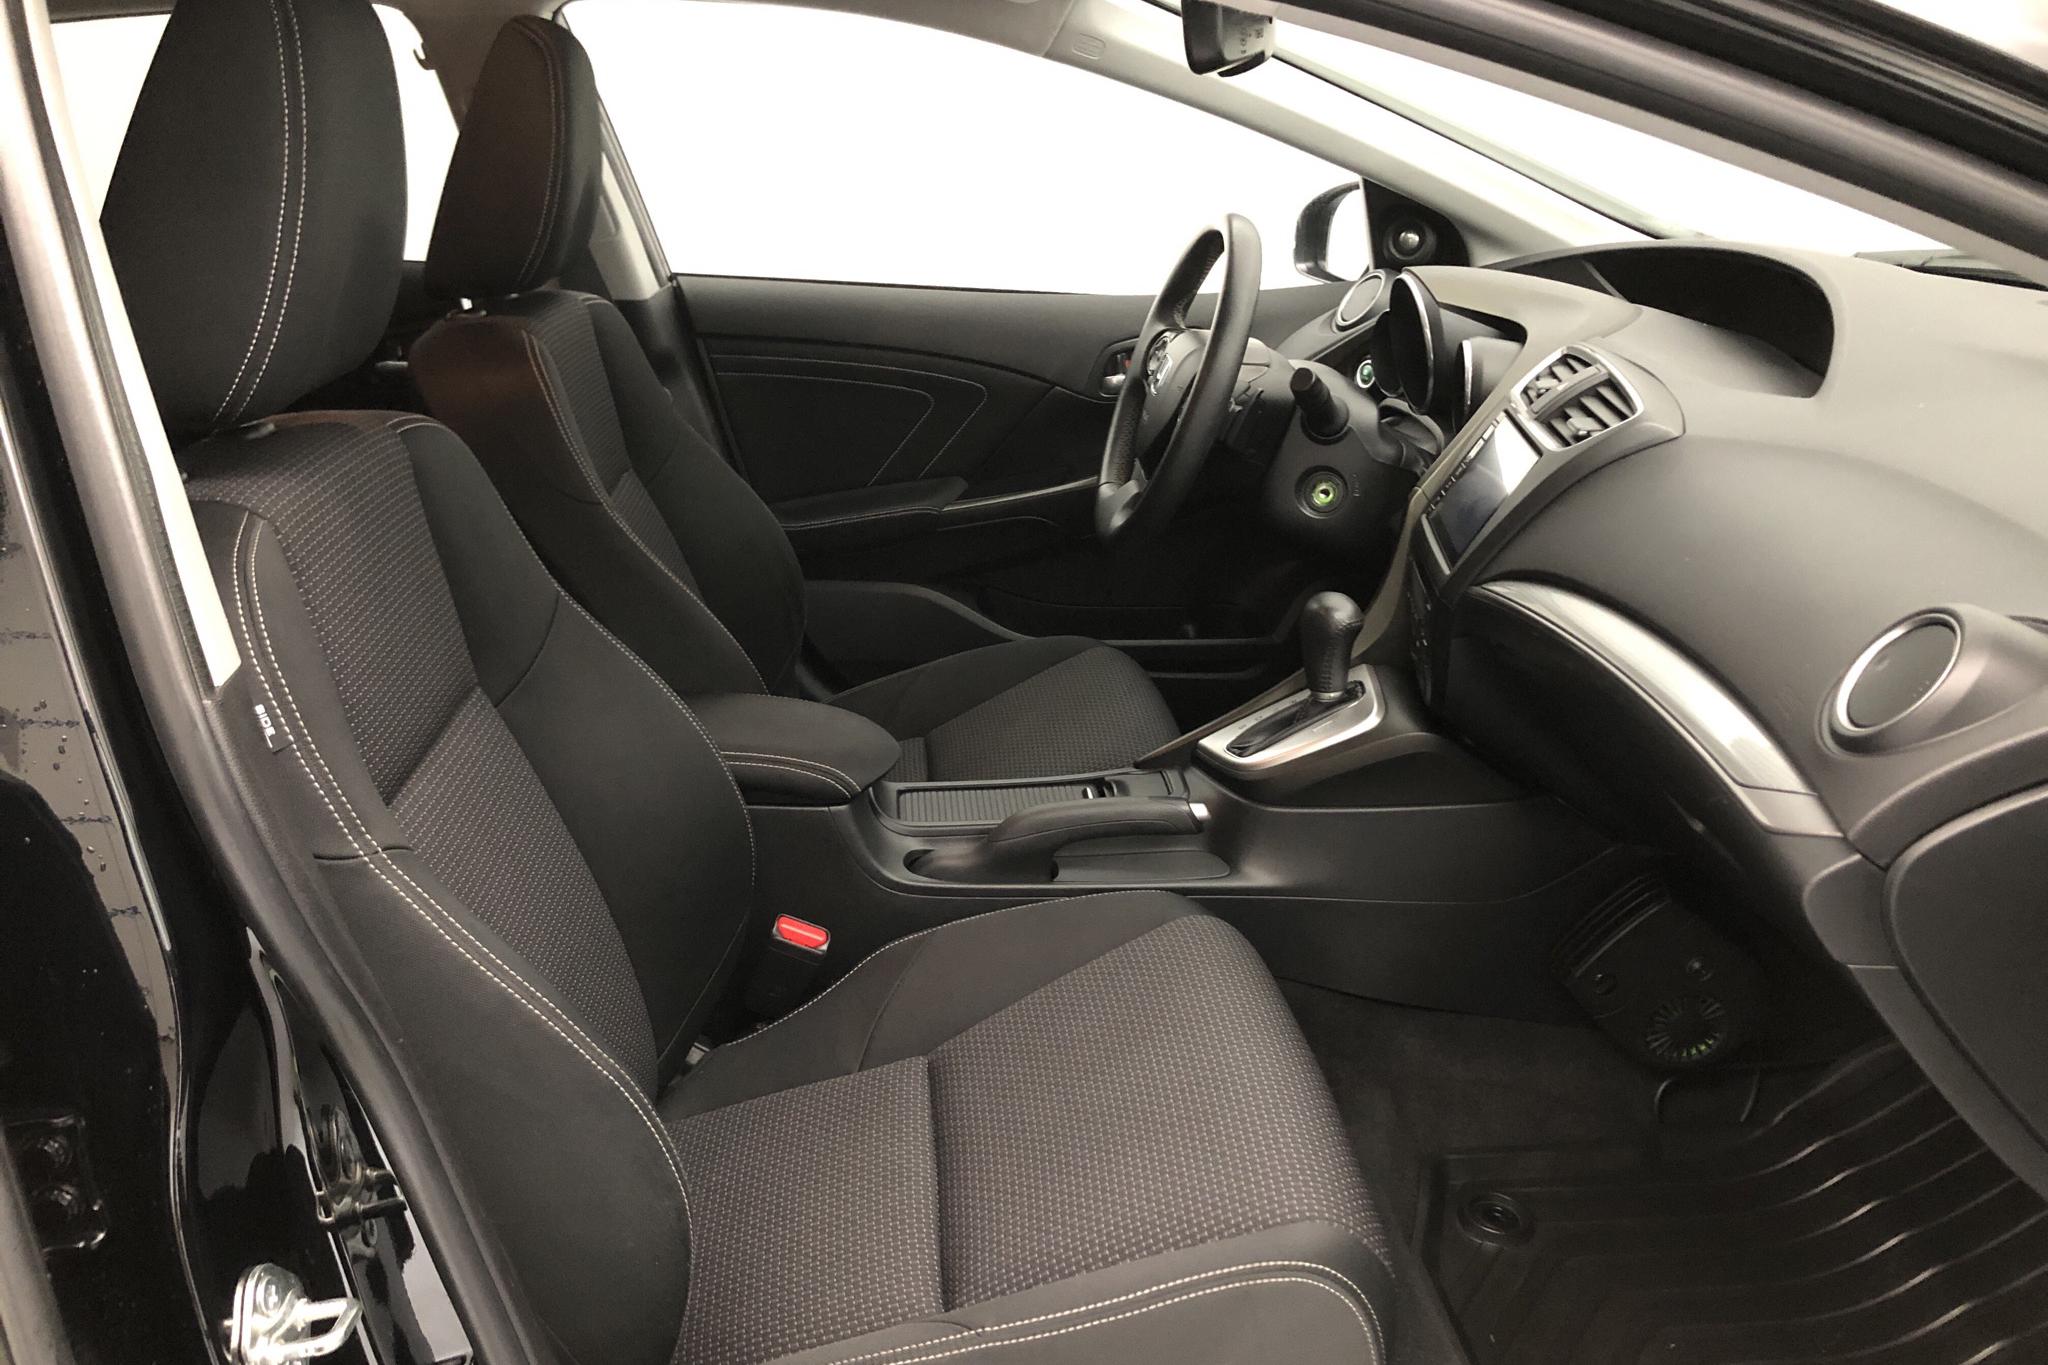 Honda Civic 1.8 i-VTEC Tourer (142hk) - 60 440 km - Automatic - black - 2015